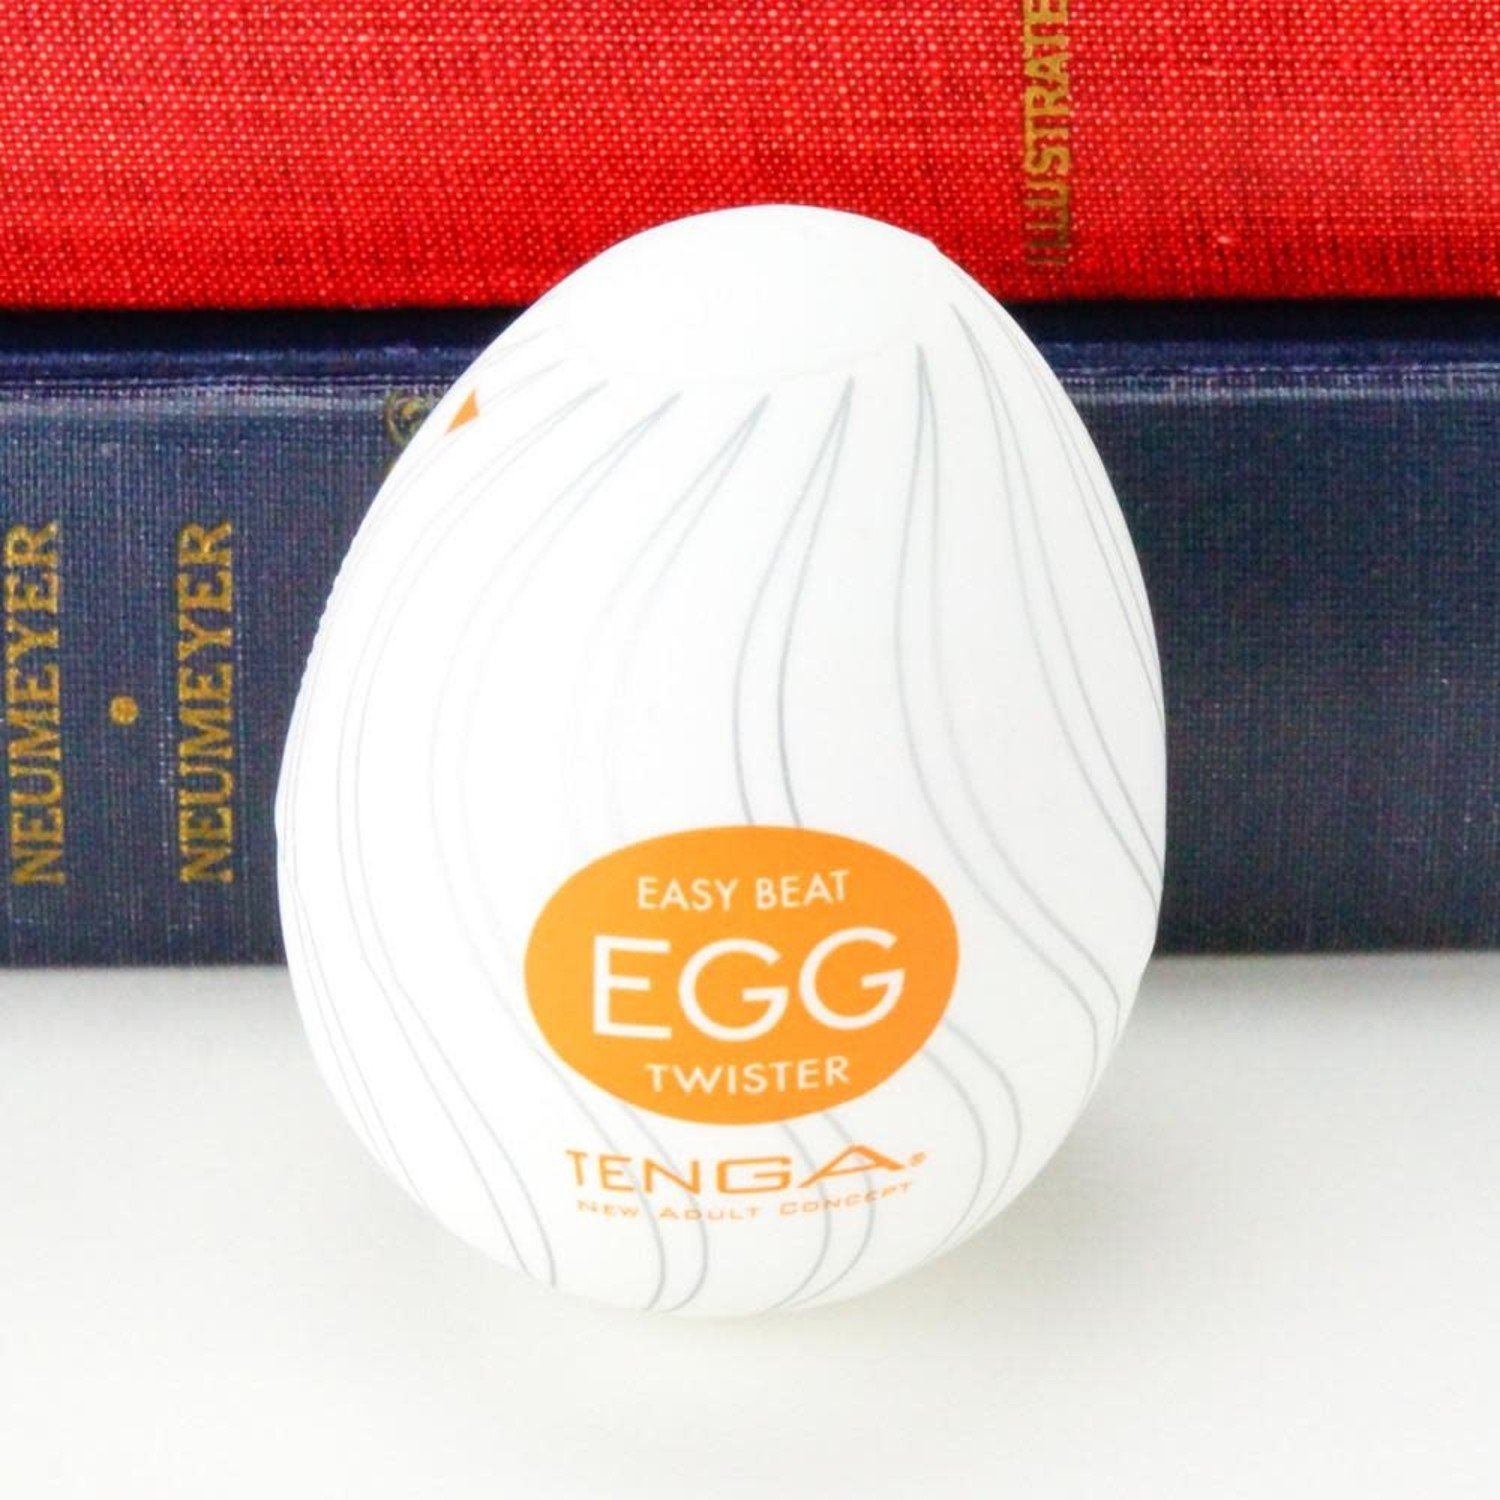 Tenga Egg - The Smitten Kitten Inc.